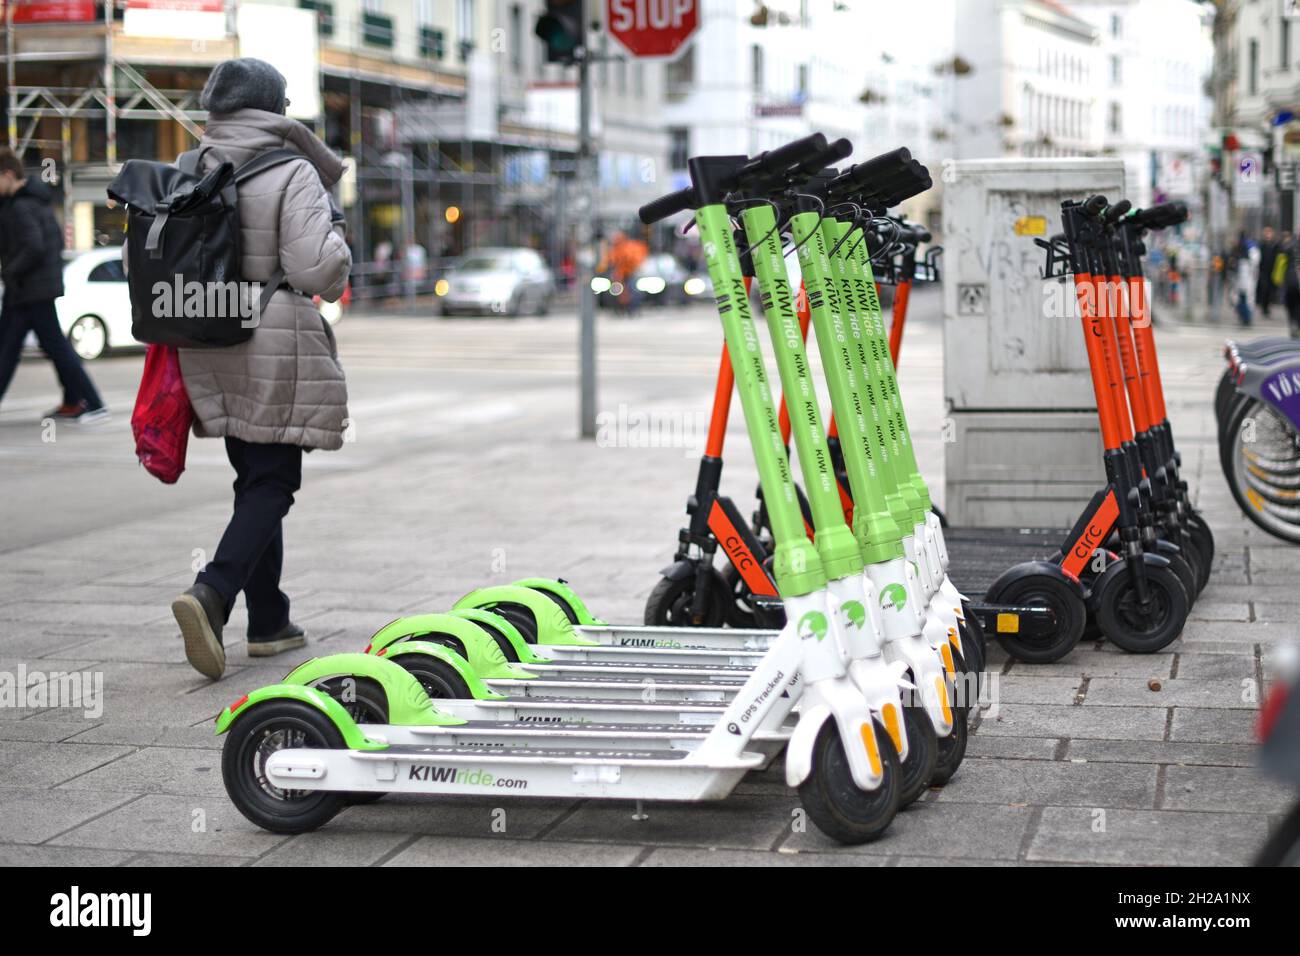 E-Scooter zum mieten erfreuen sich in Wien großer Beliebtheit. Im Jahr 2020 sind in der österreichischen Hauptstadt acht Anbieter aktiv. - e-scooters Foto Stock